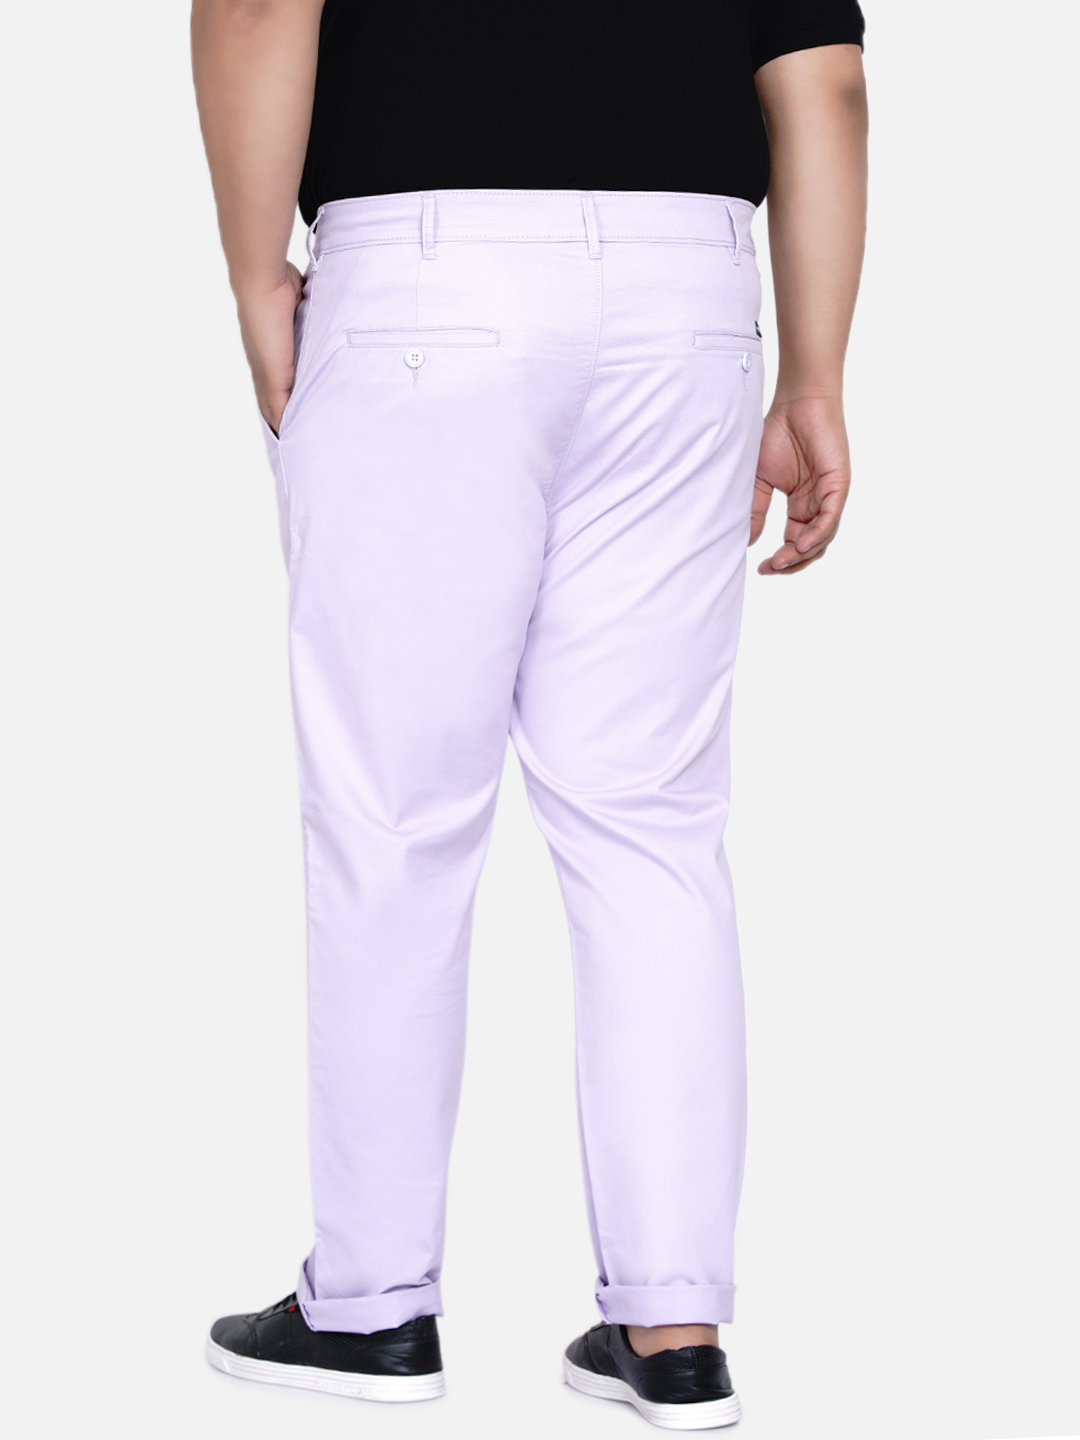 bottomwear/trousers/JPTR2161Q/jptr2161q-4.jpg